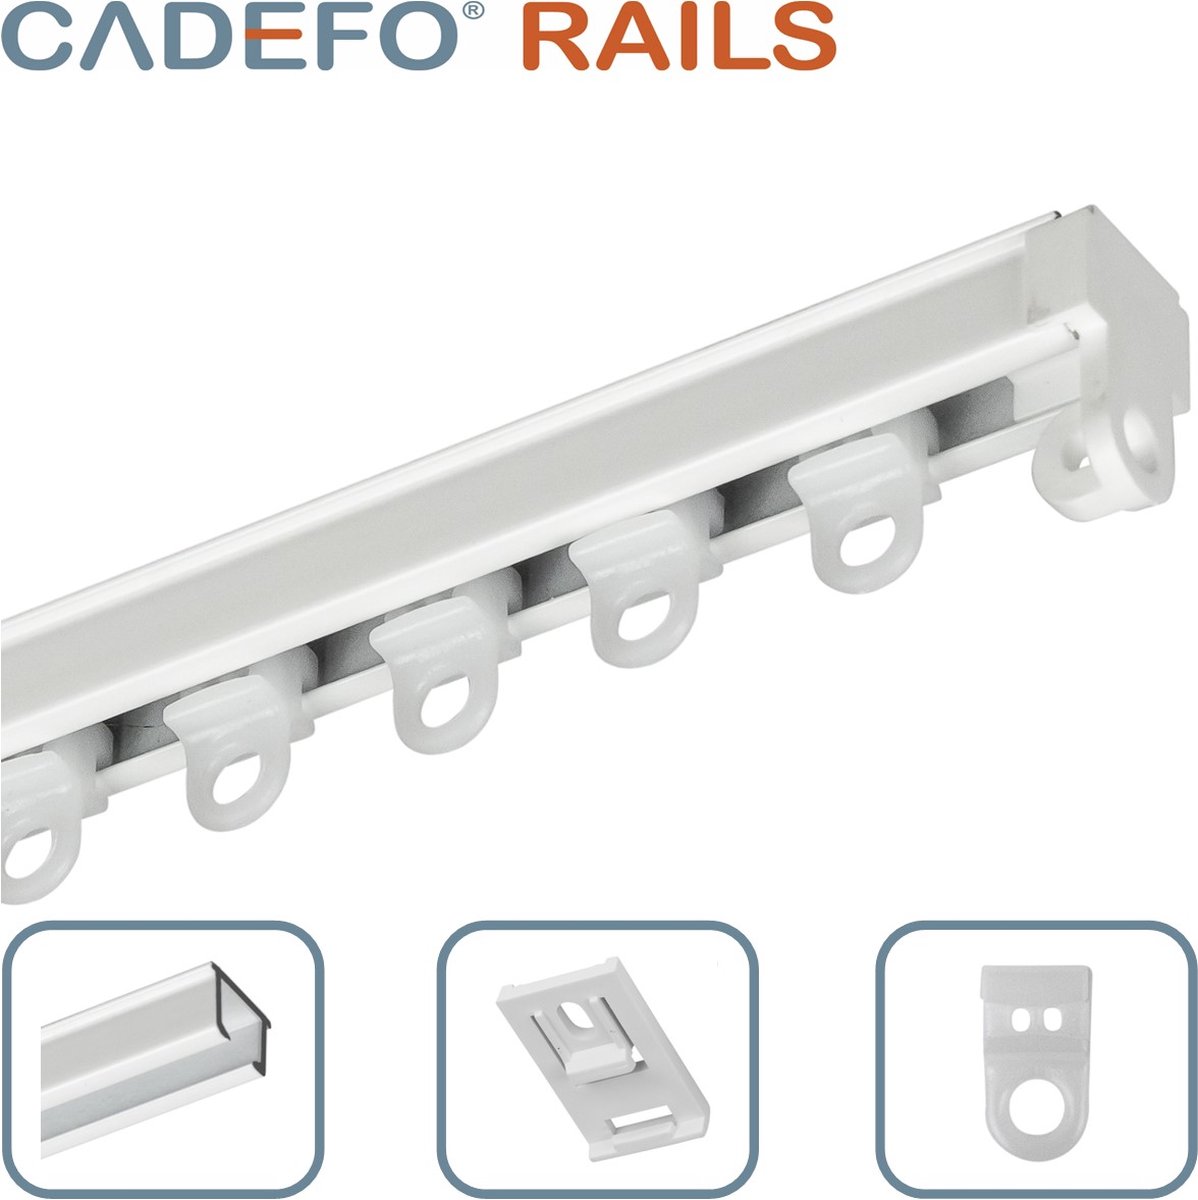 CADEFO RAILS (401 - 450 cm) Gordijnrails - Compleet op maat! - UIT 1 STUK - Leverbaar tot 6 meter - Plafondbevestiging - Lengte 445 cm